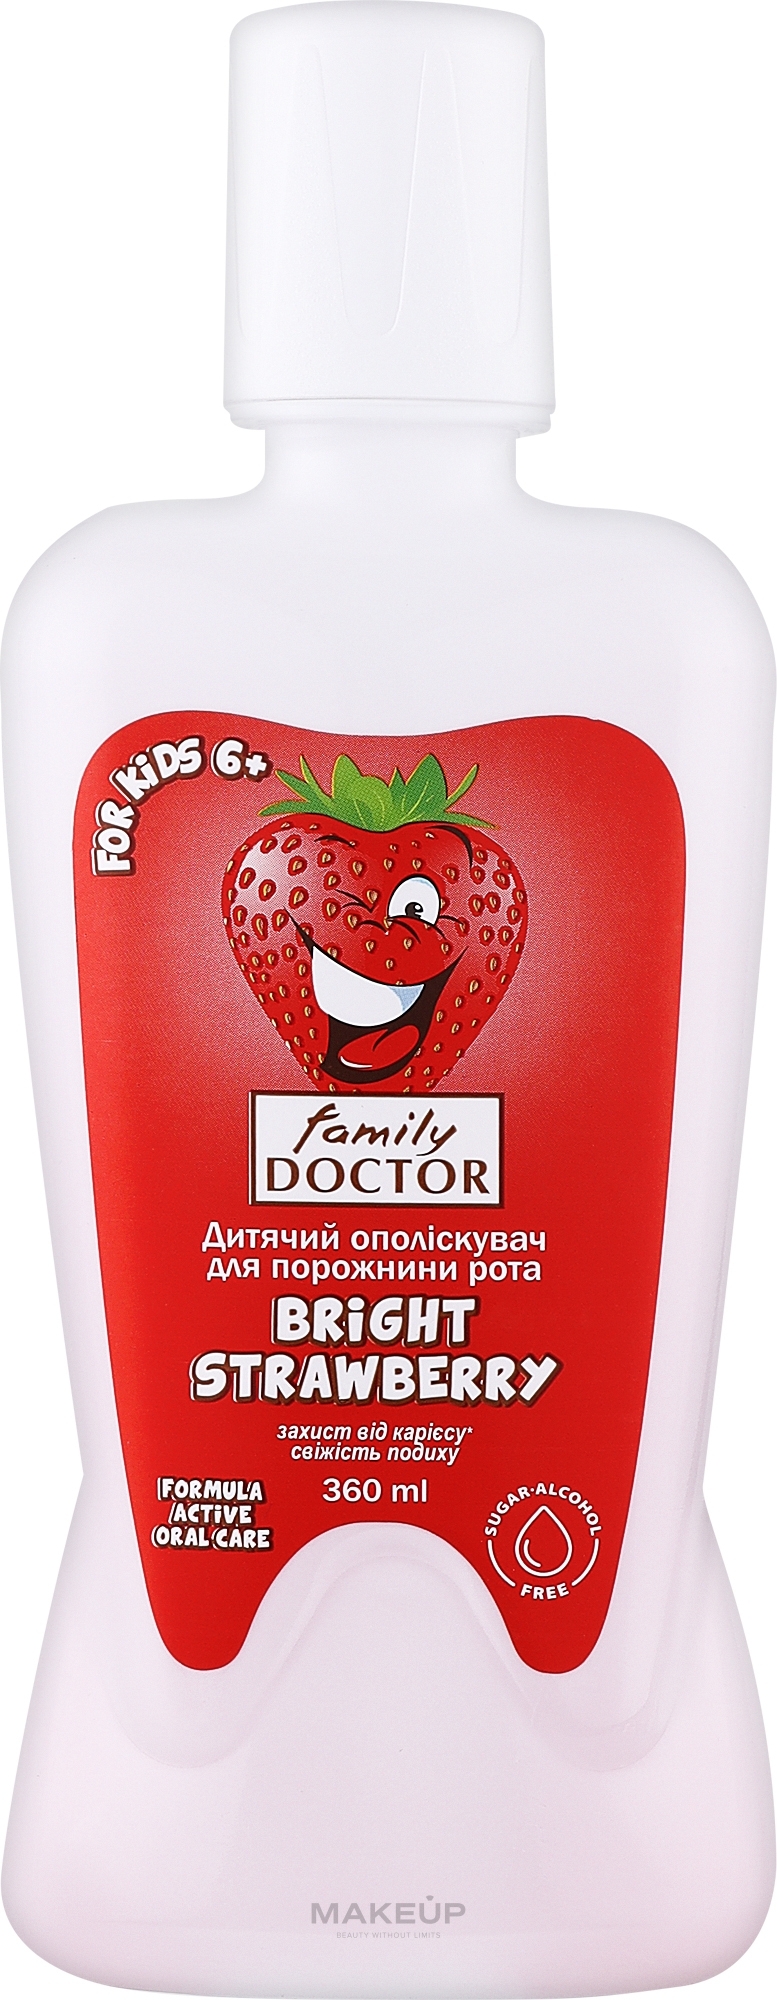 Дитячий ополіскувач для порожнини рота "Bright Strawberry" - Family Doctor — фото 360ml